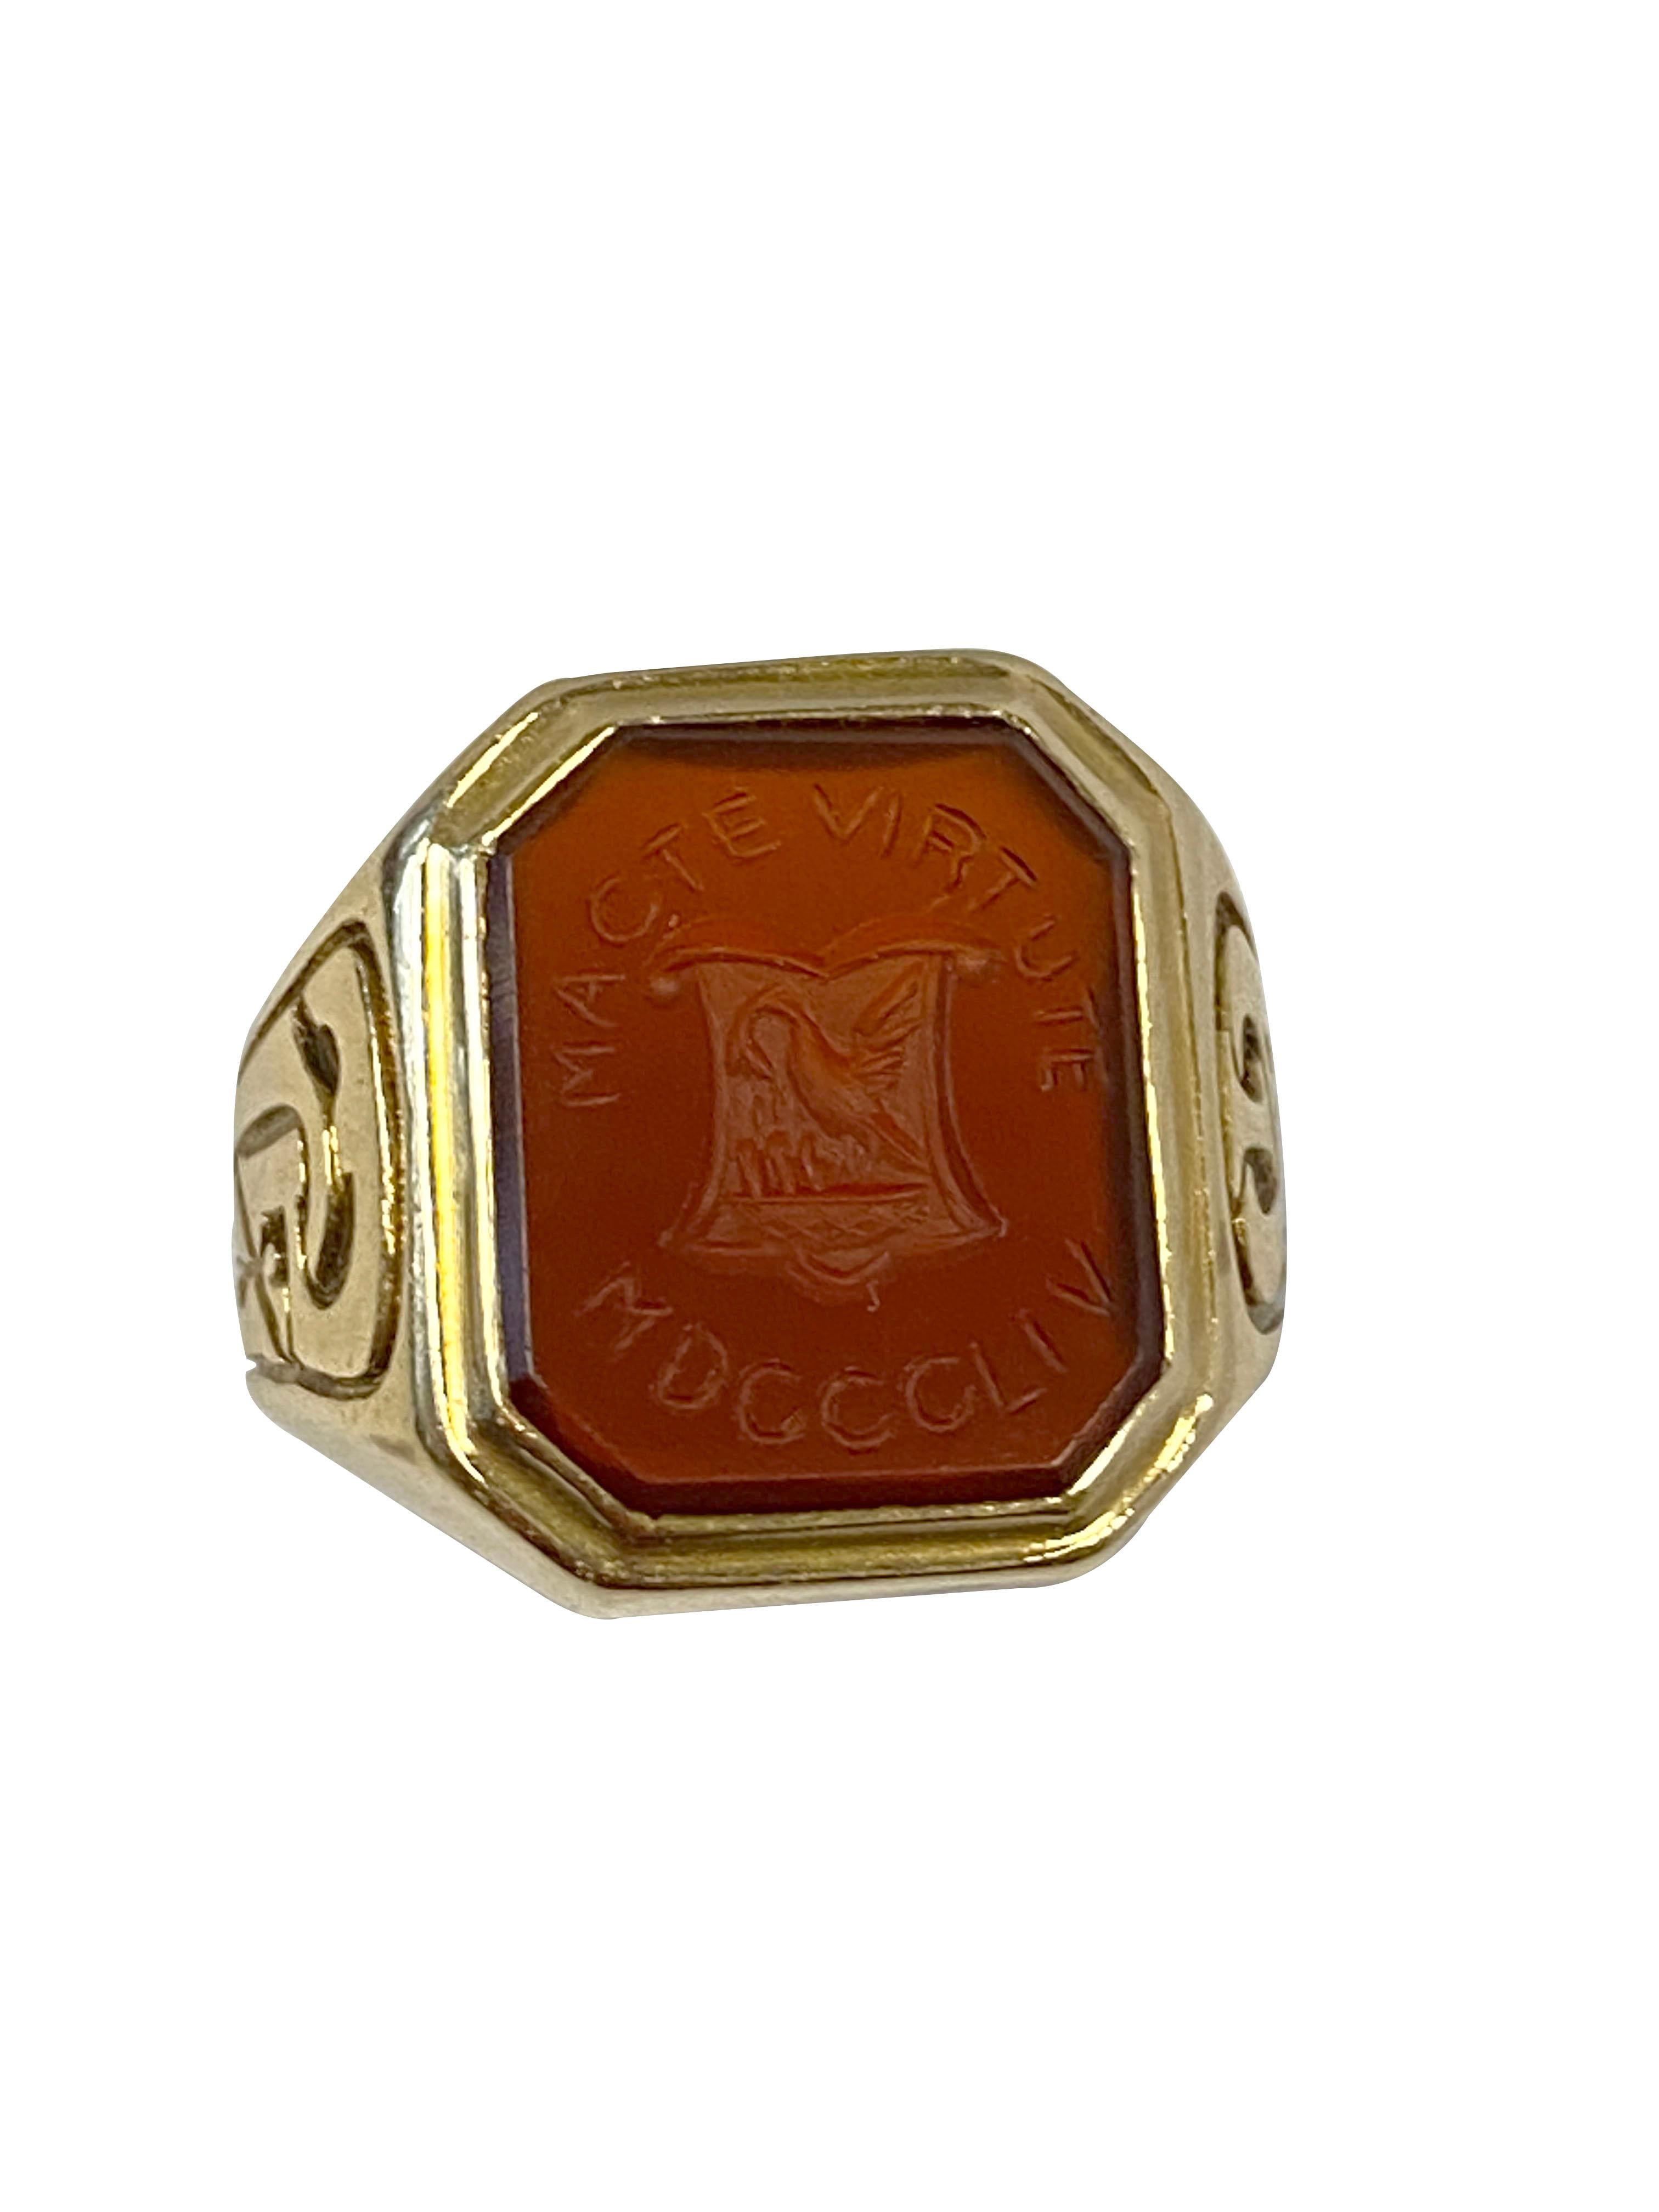 Circa 1917 Tiffany & Company 14k Yellow Gold Signet Crest Ring, le dessus mesure 1/2 X 1/2 inch et est serti d'une cornaline qui est gravée d'un écusson d'un cygne ou d'une grue et du mot latin 